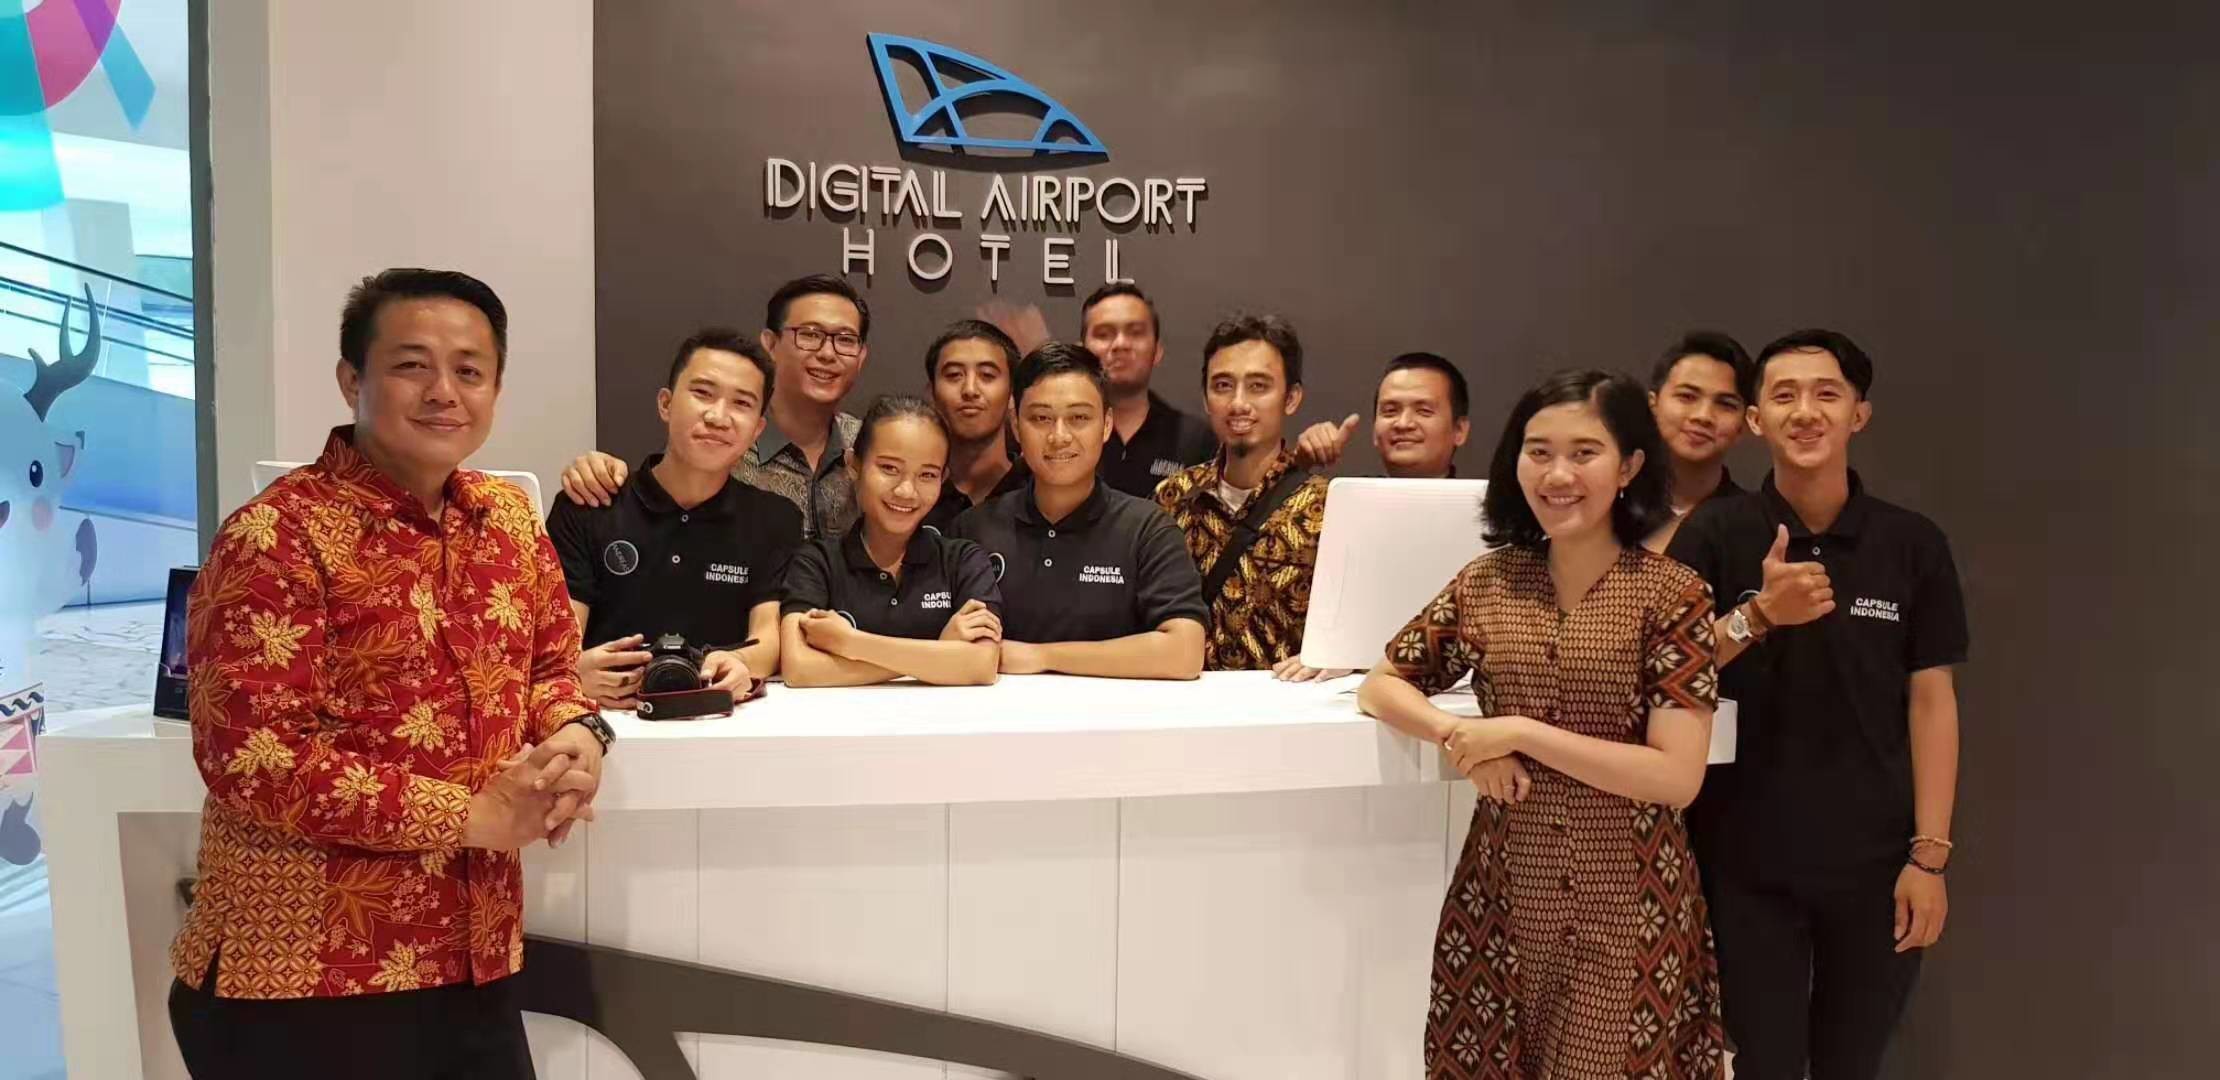 najnowsza sprawa firmy na temat Jakarta airport capsule hotel